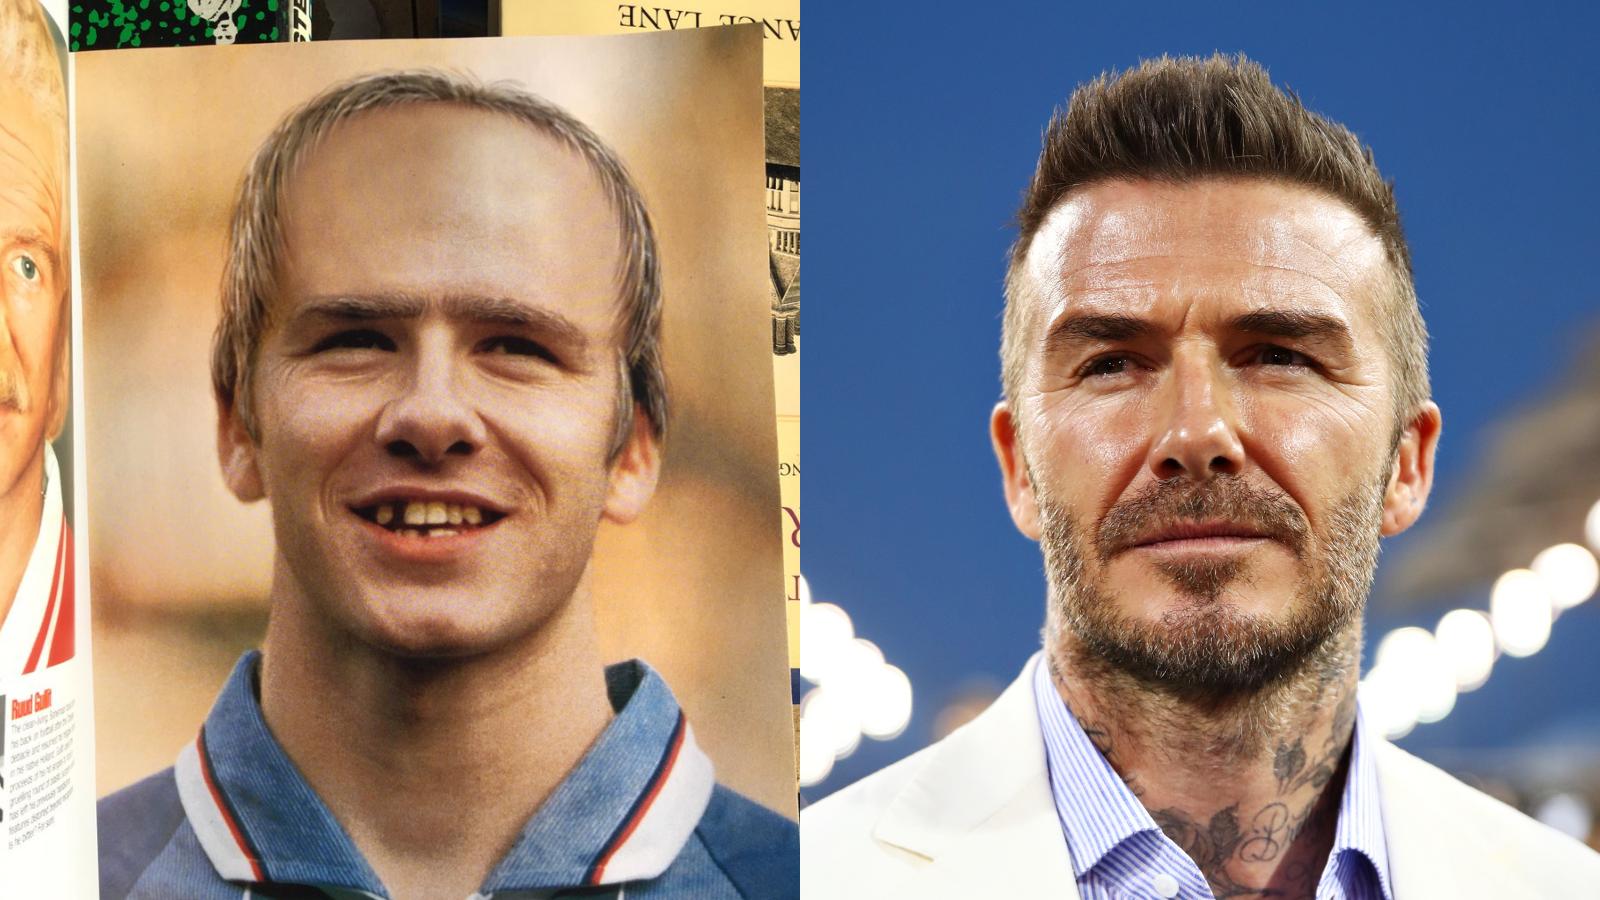 David Beckham: Hãy cùng chiêm ngưỡng hình ảnh của một trong những cầu thủ vĩ đại nhất mọi thời đại - David Beckham. Với tình yêu và đam mê bóng đá, anh đã chinh phục cả thế giới bằng tài năng và sự nghiêm túc. Hình ảnh của anh sẽ đem đến cho bạn niềm cảm hứng và động lực để vươn lên đến những tầm cao mới!